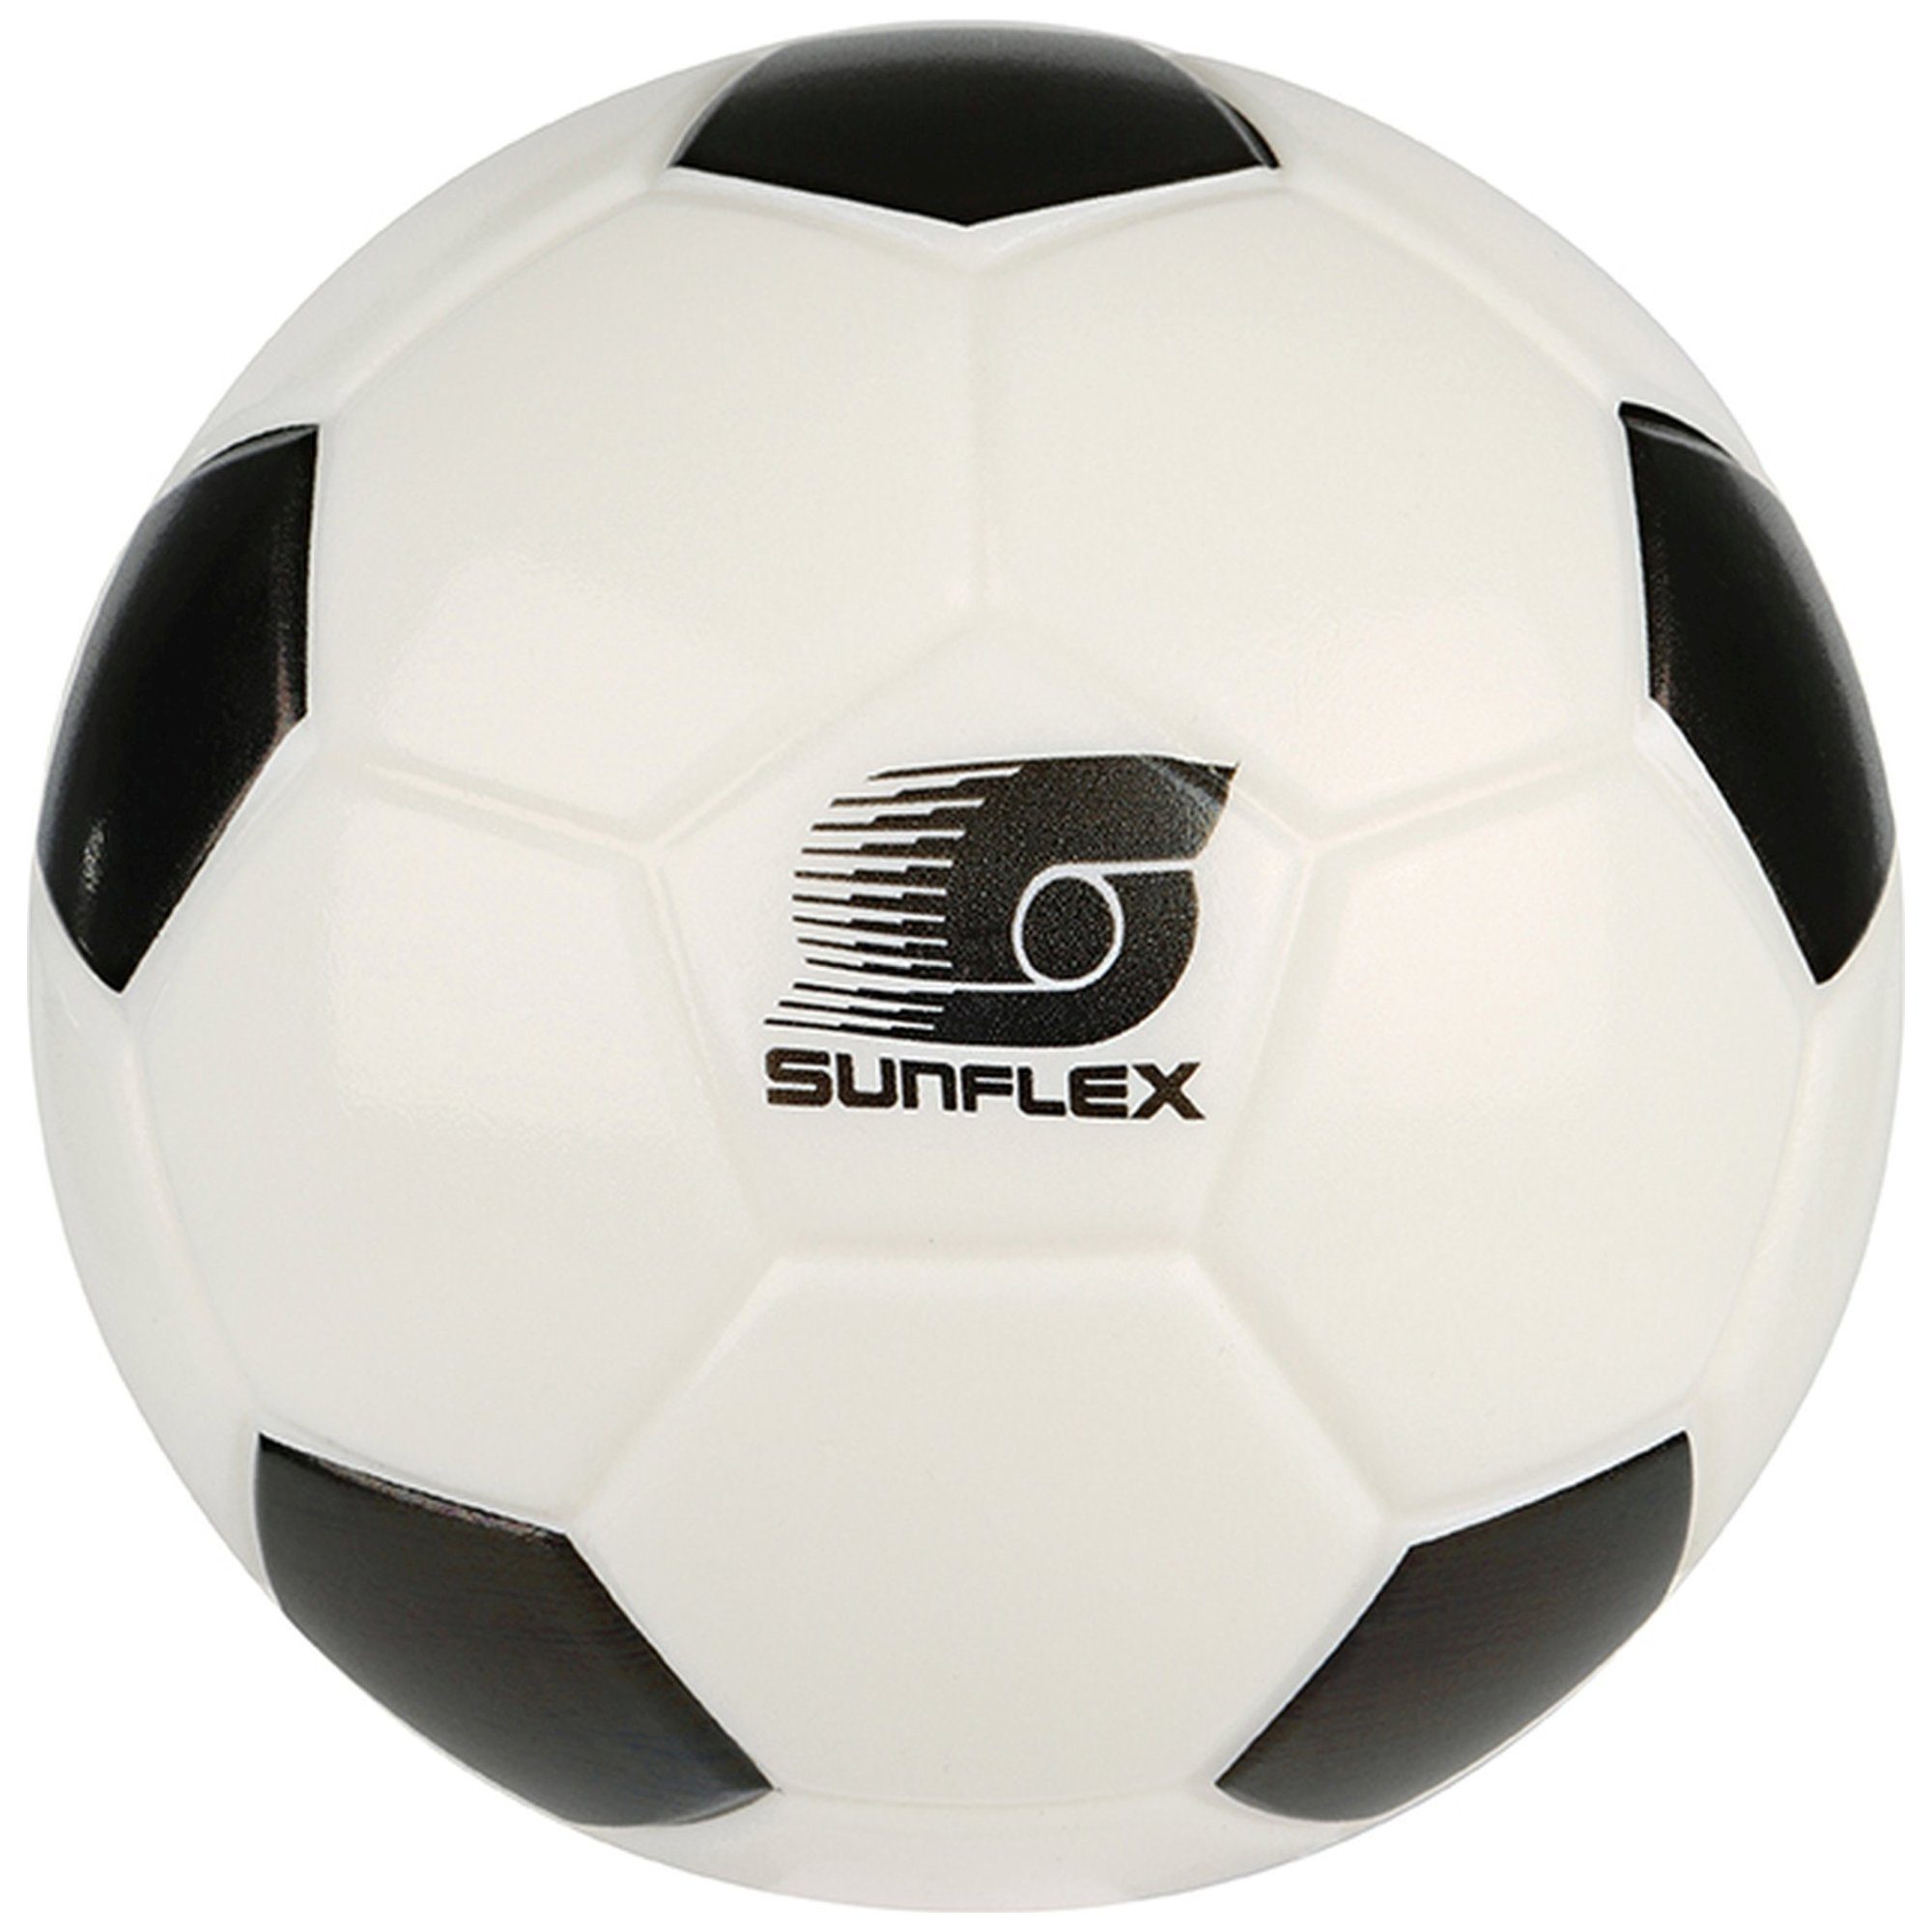 Fußball sunflex Sunflex Fußball Softball